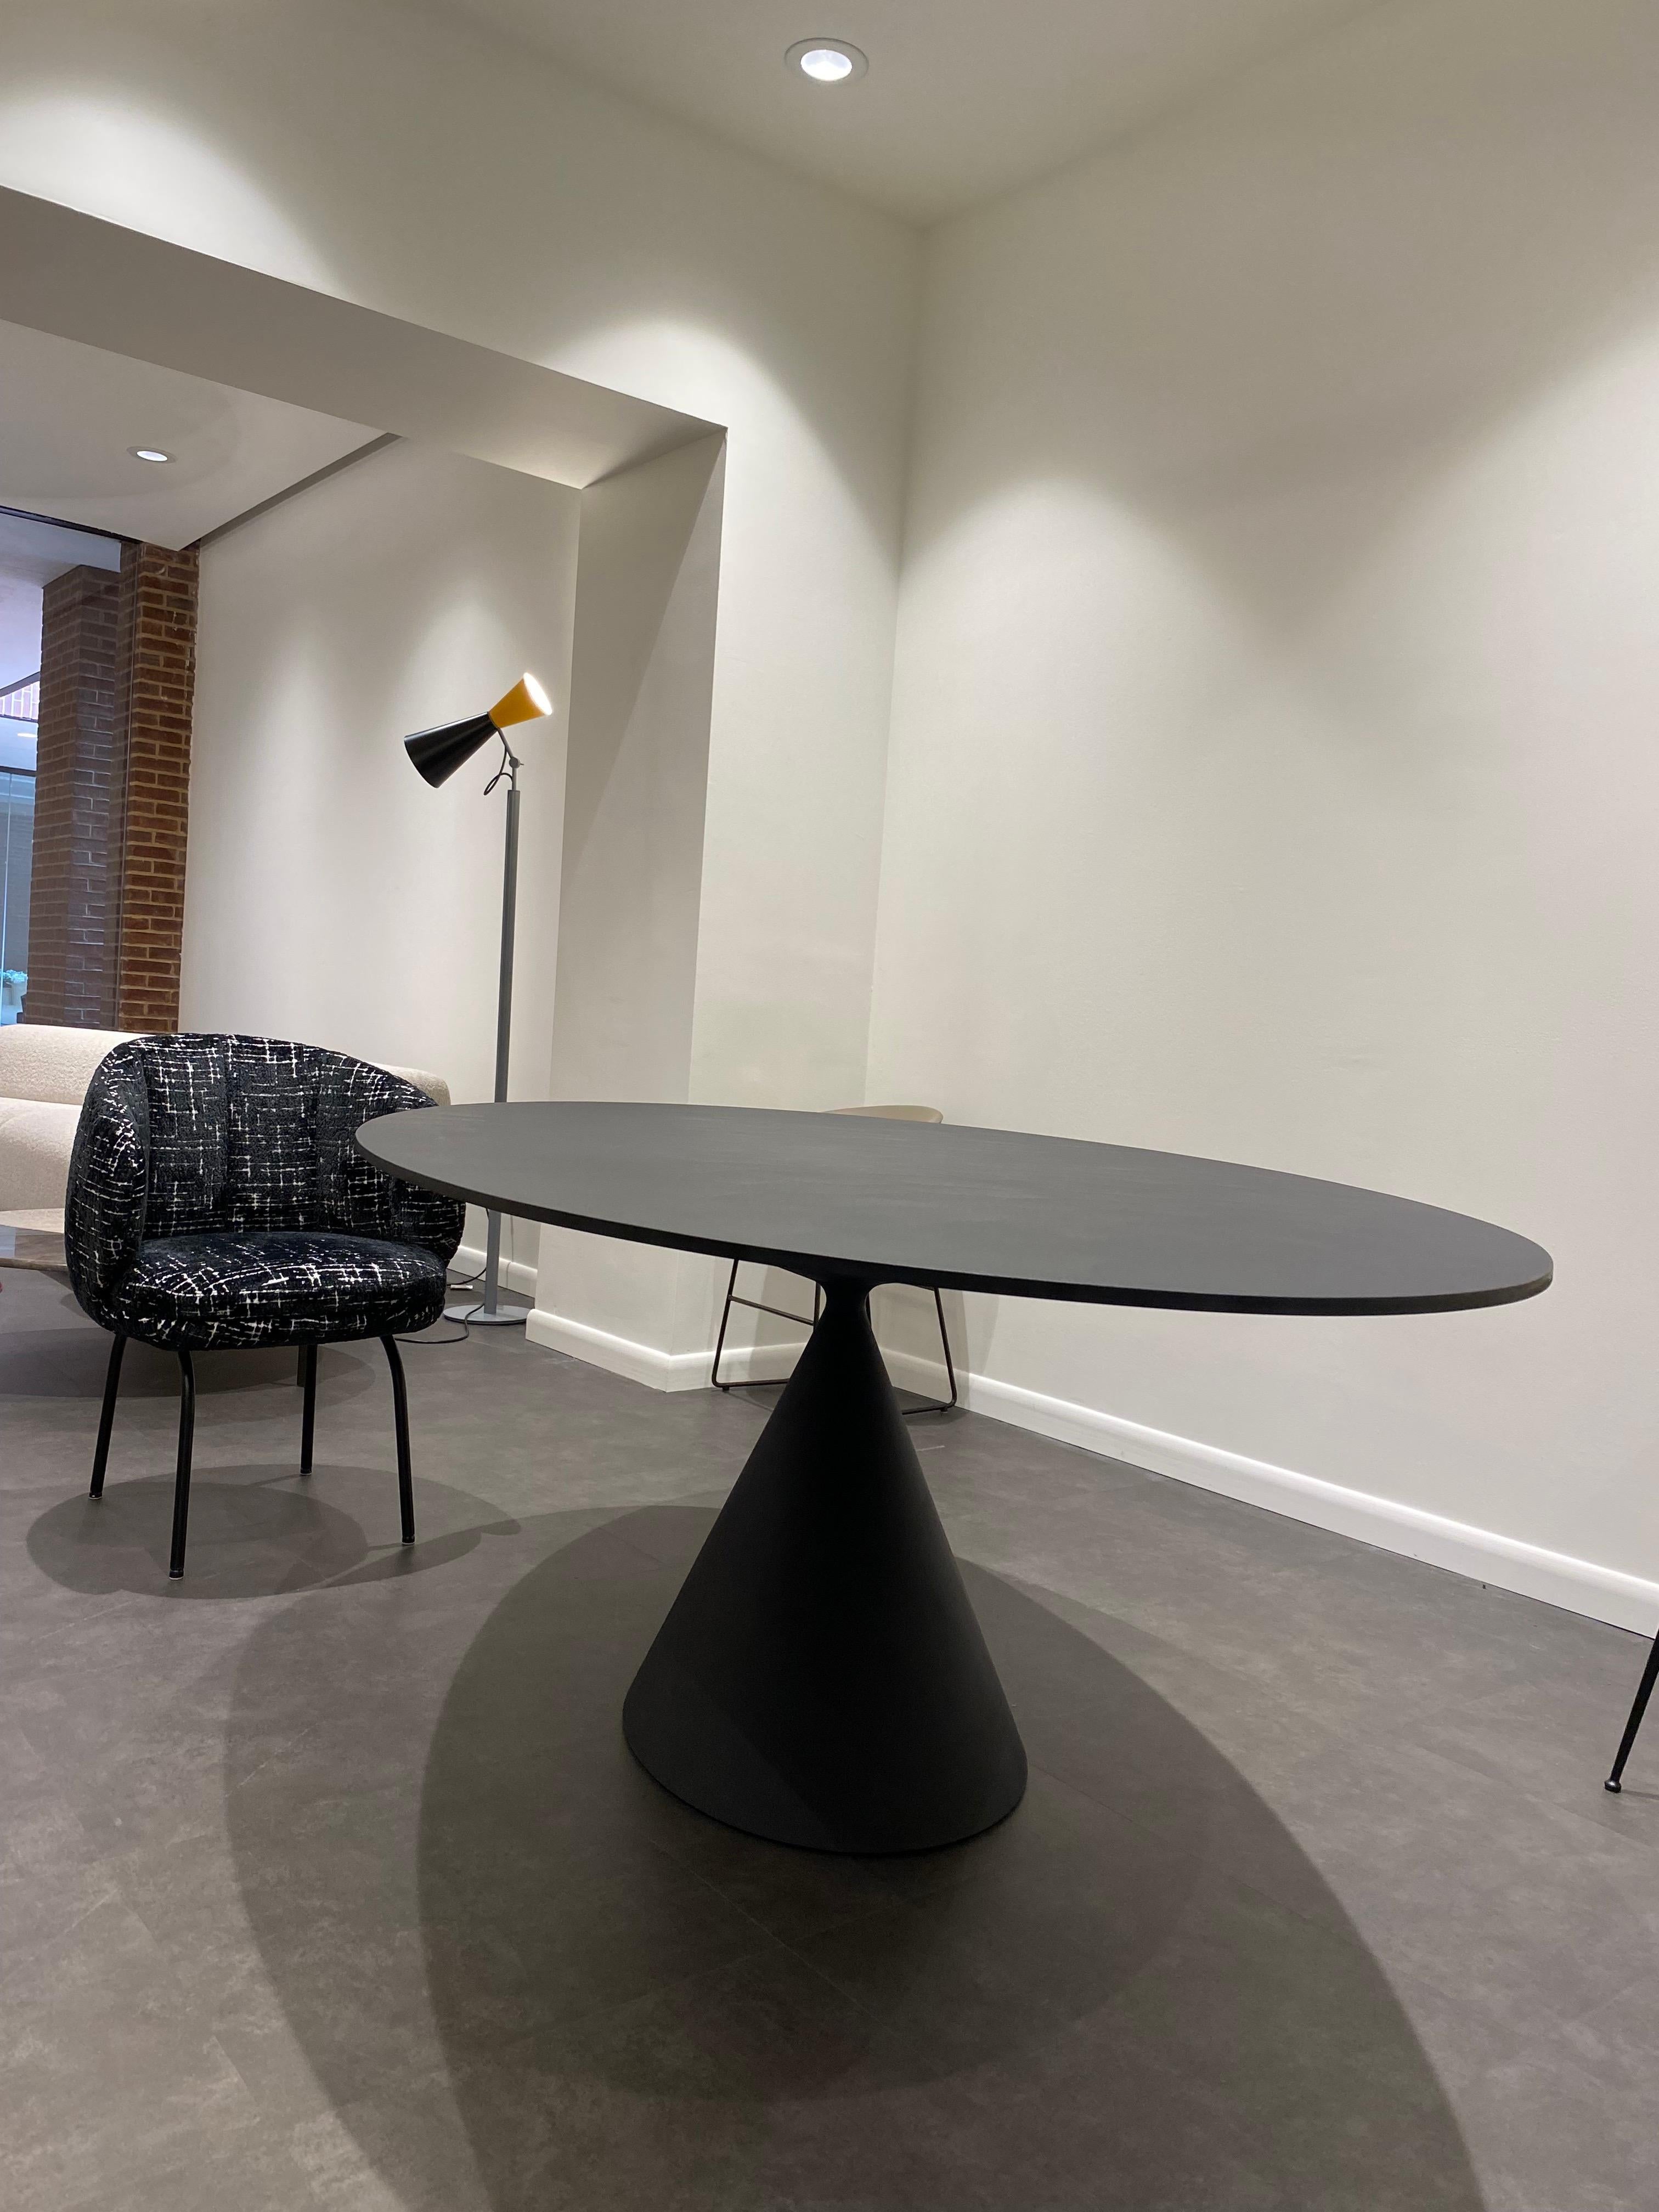 TABLE D'EXTÉRIEUR EN ARGILE Diam.160 

- D66 béton noir/TOP D66 béton noir

Plus qu'une table, une sculpture, une union parfaite de beauté et de proportions harmonieuses. Présenté au Salon du meuble de Milan 2015 et lauréat de différents prix :